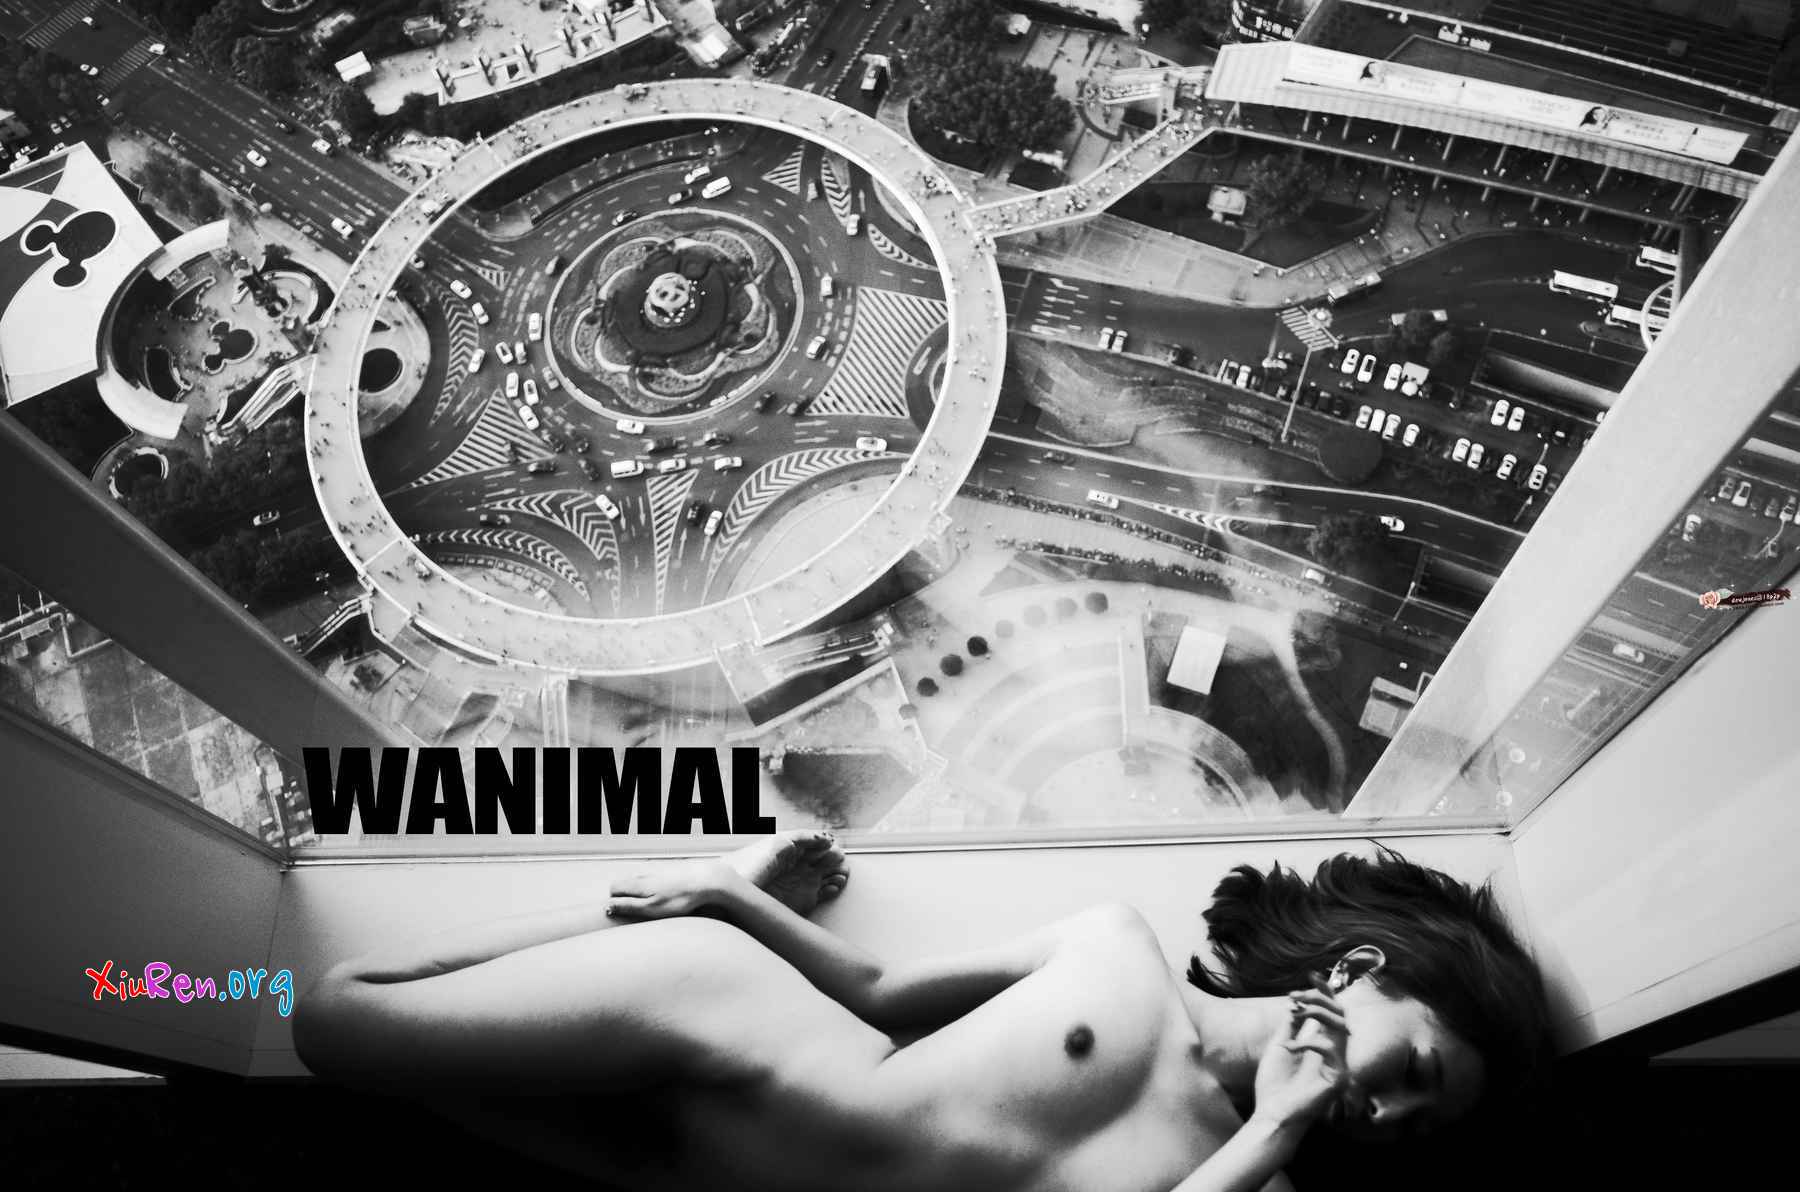 wanimal-201608